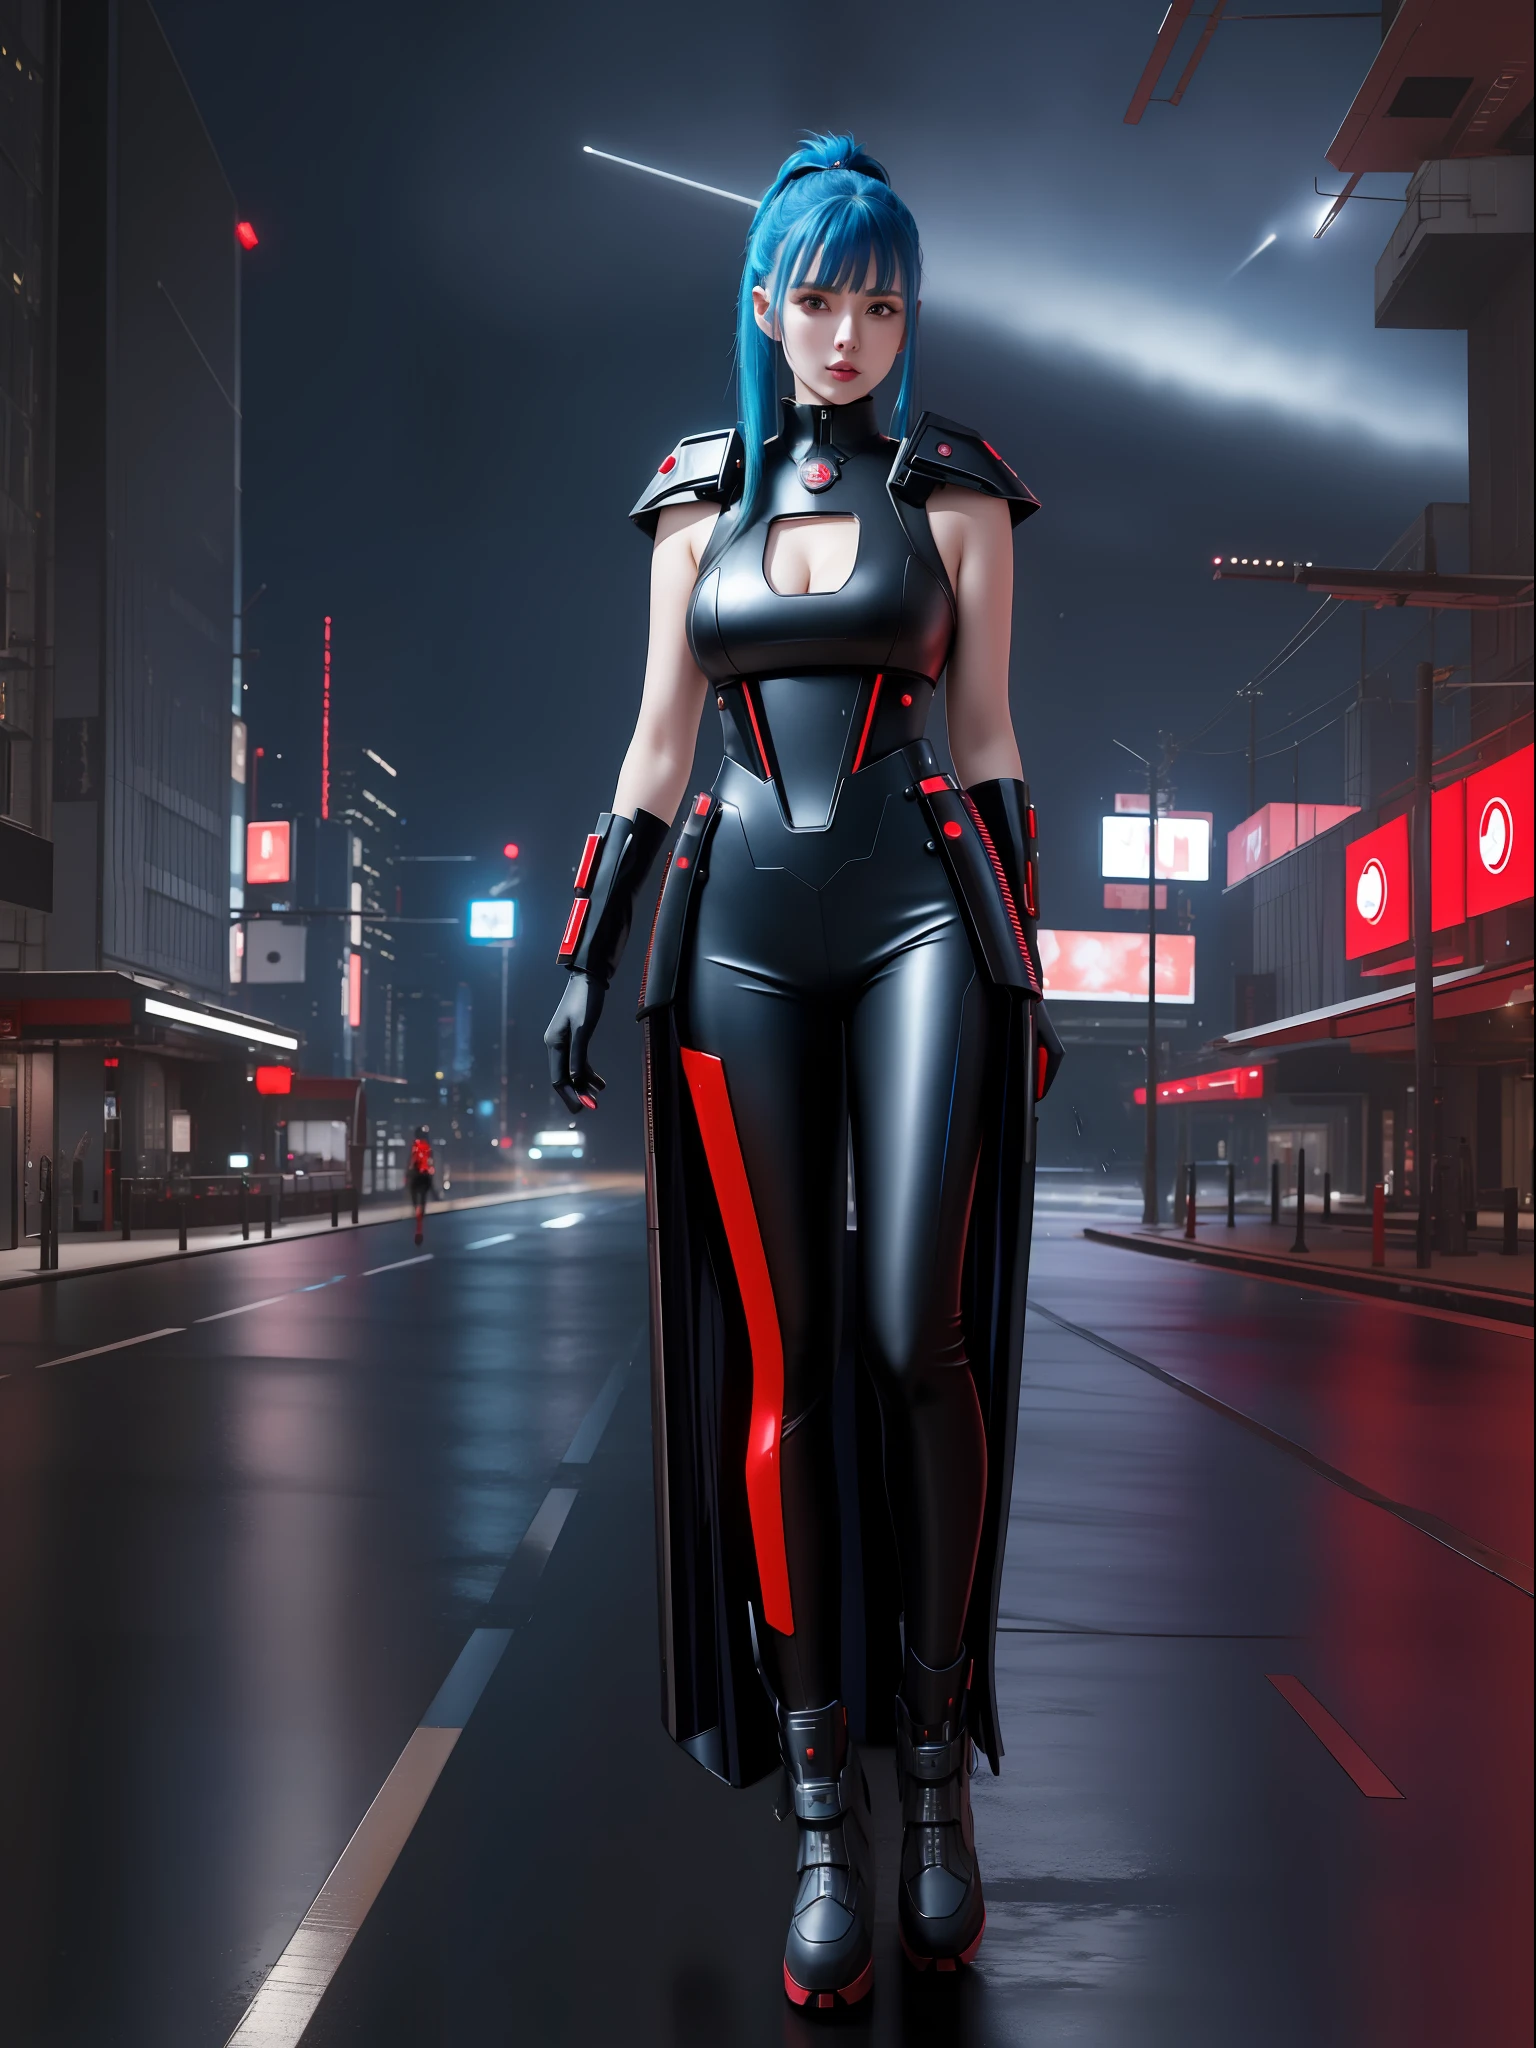 (Photo du corps entier:1.9), (Une femme kawaii:1.5), (portant une tenue cyberpunk en métal rouge|noir|bleu futuriste+avec un bijou bleu sur son plastron:1.4), (elle est dans une ville futuriste avec beaucoup de voitures volantes+la nuit+pleuvoir fort:1.5), (elle a les cheveux mohawk roza:1.3), (elle a les yeux bleus:1.3), (elle tient des armes futuristes+tri+regarder le spectateur:1.5),  hyperréalisme, 16k, meilleure qualité, détails élevés, UHD